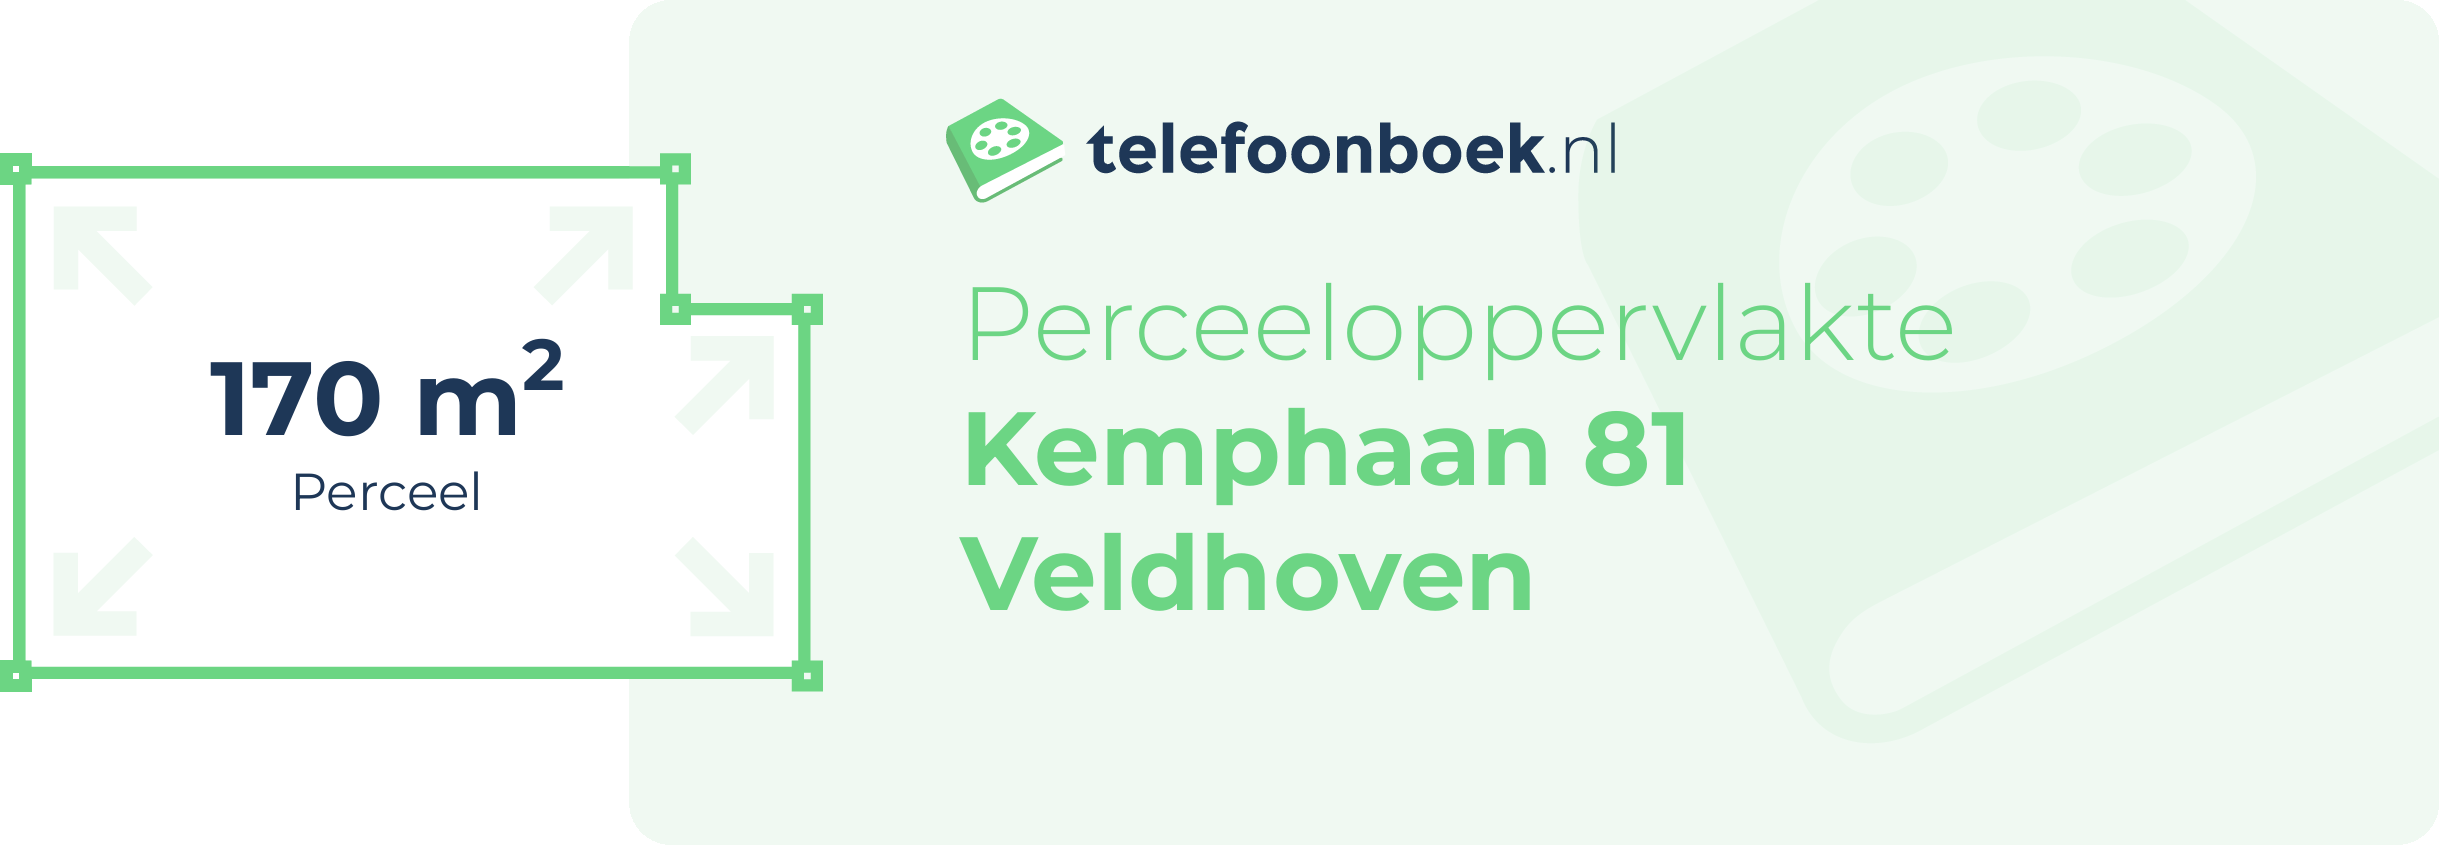 Perceeloppervlakte Kemphaan 81 Veldhoven